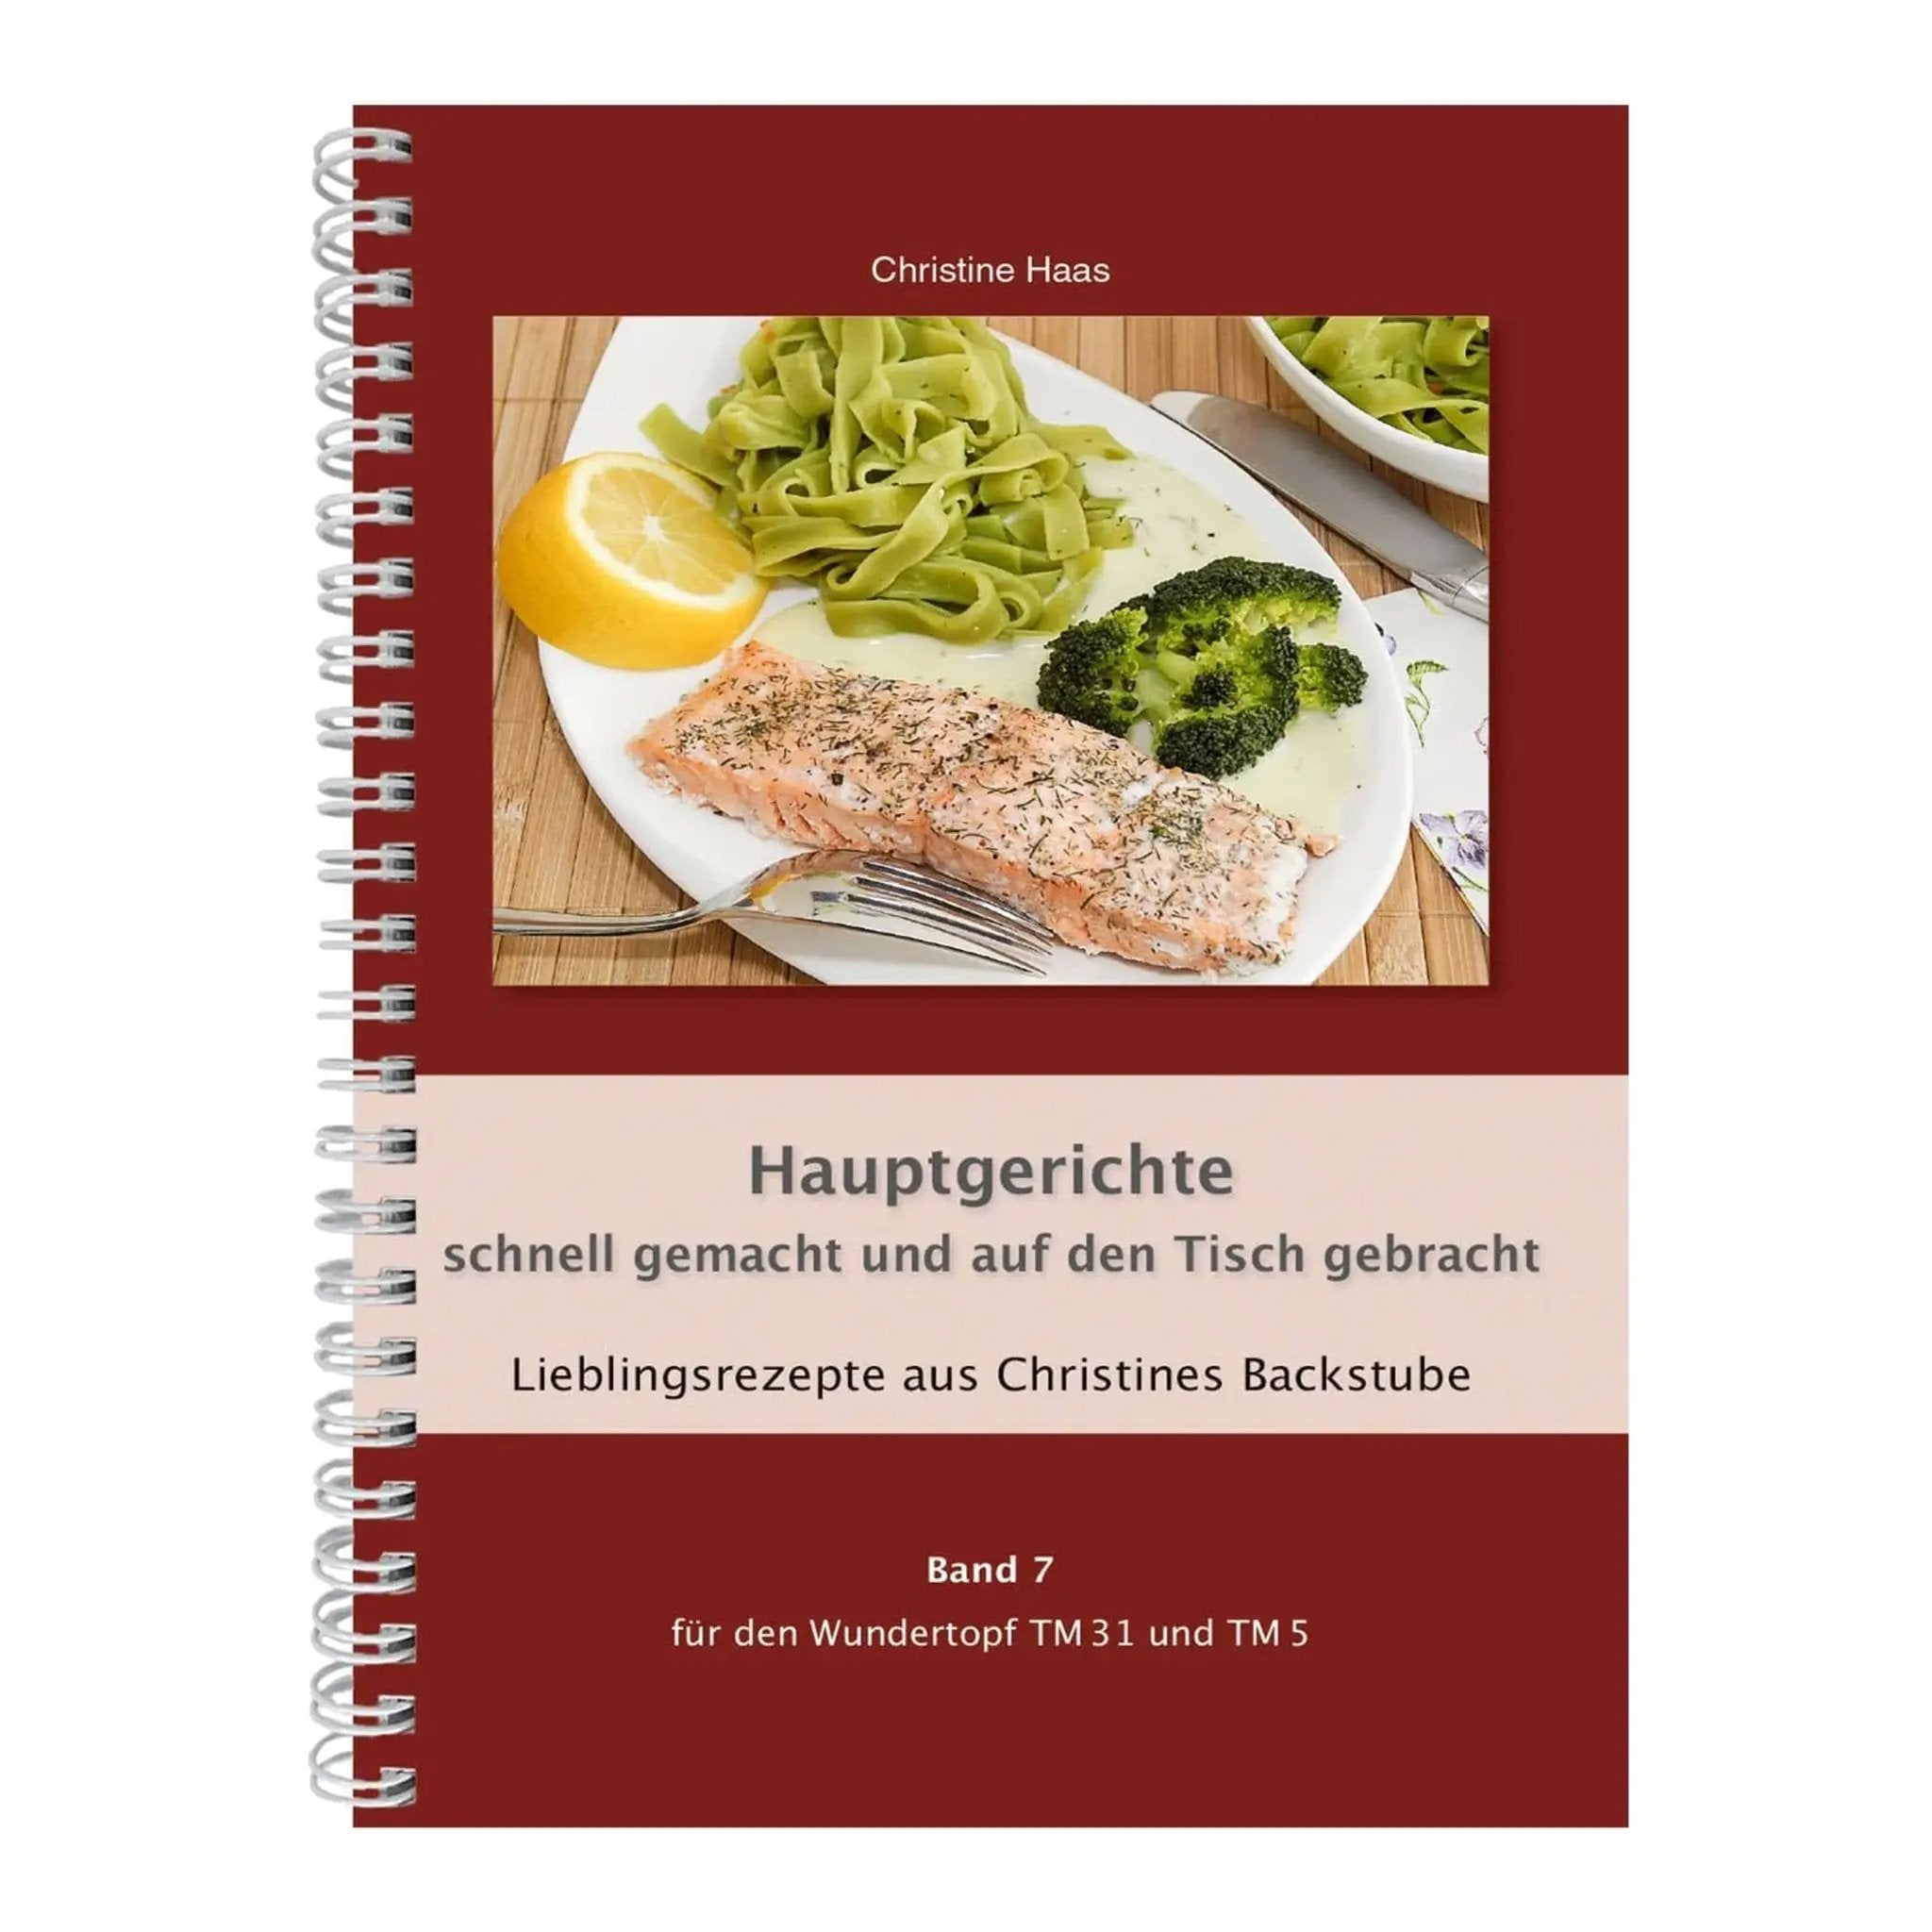 Hauptgerichte - schnell gemacht und auf den Tisch gebracht | Christine Haas | Band 7 - Wundermix GmbH